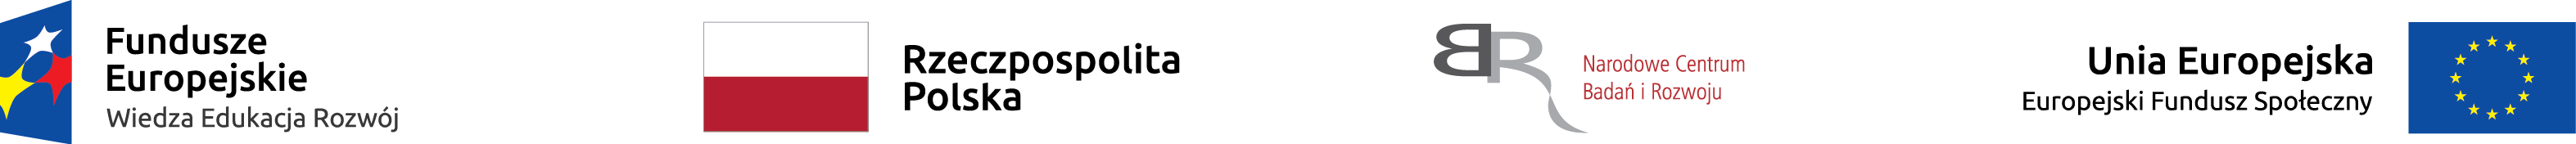 w jednej linii od lewej logotyp funduszy europejskich, flaga Polski z napisem obok: Rzeczpospolita Polska, logo Narodowego Centrum Badań i Rozwoju, potem napis 